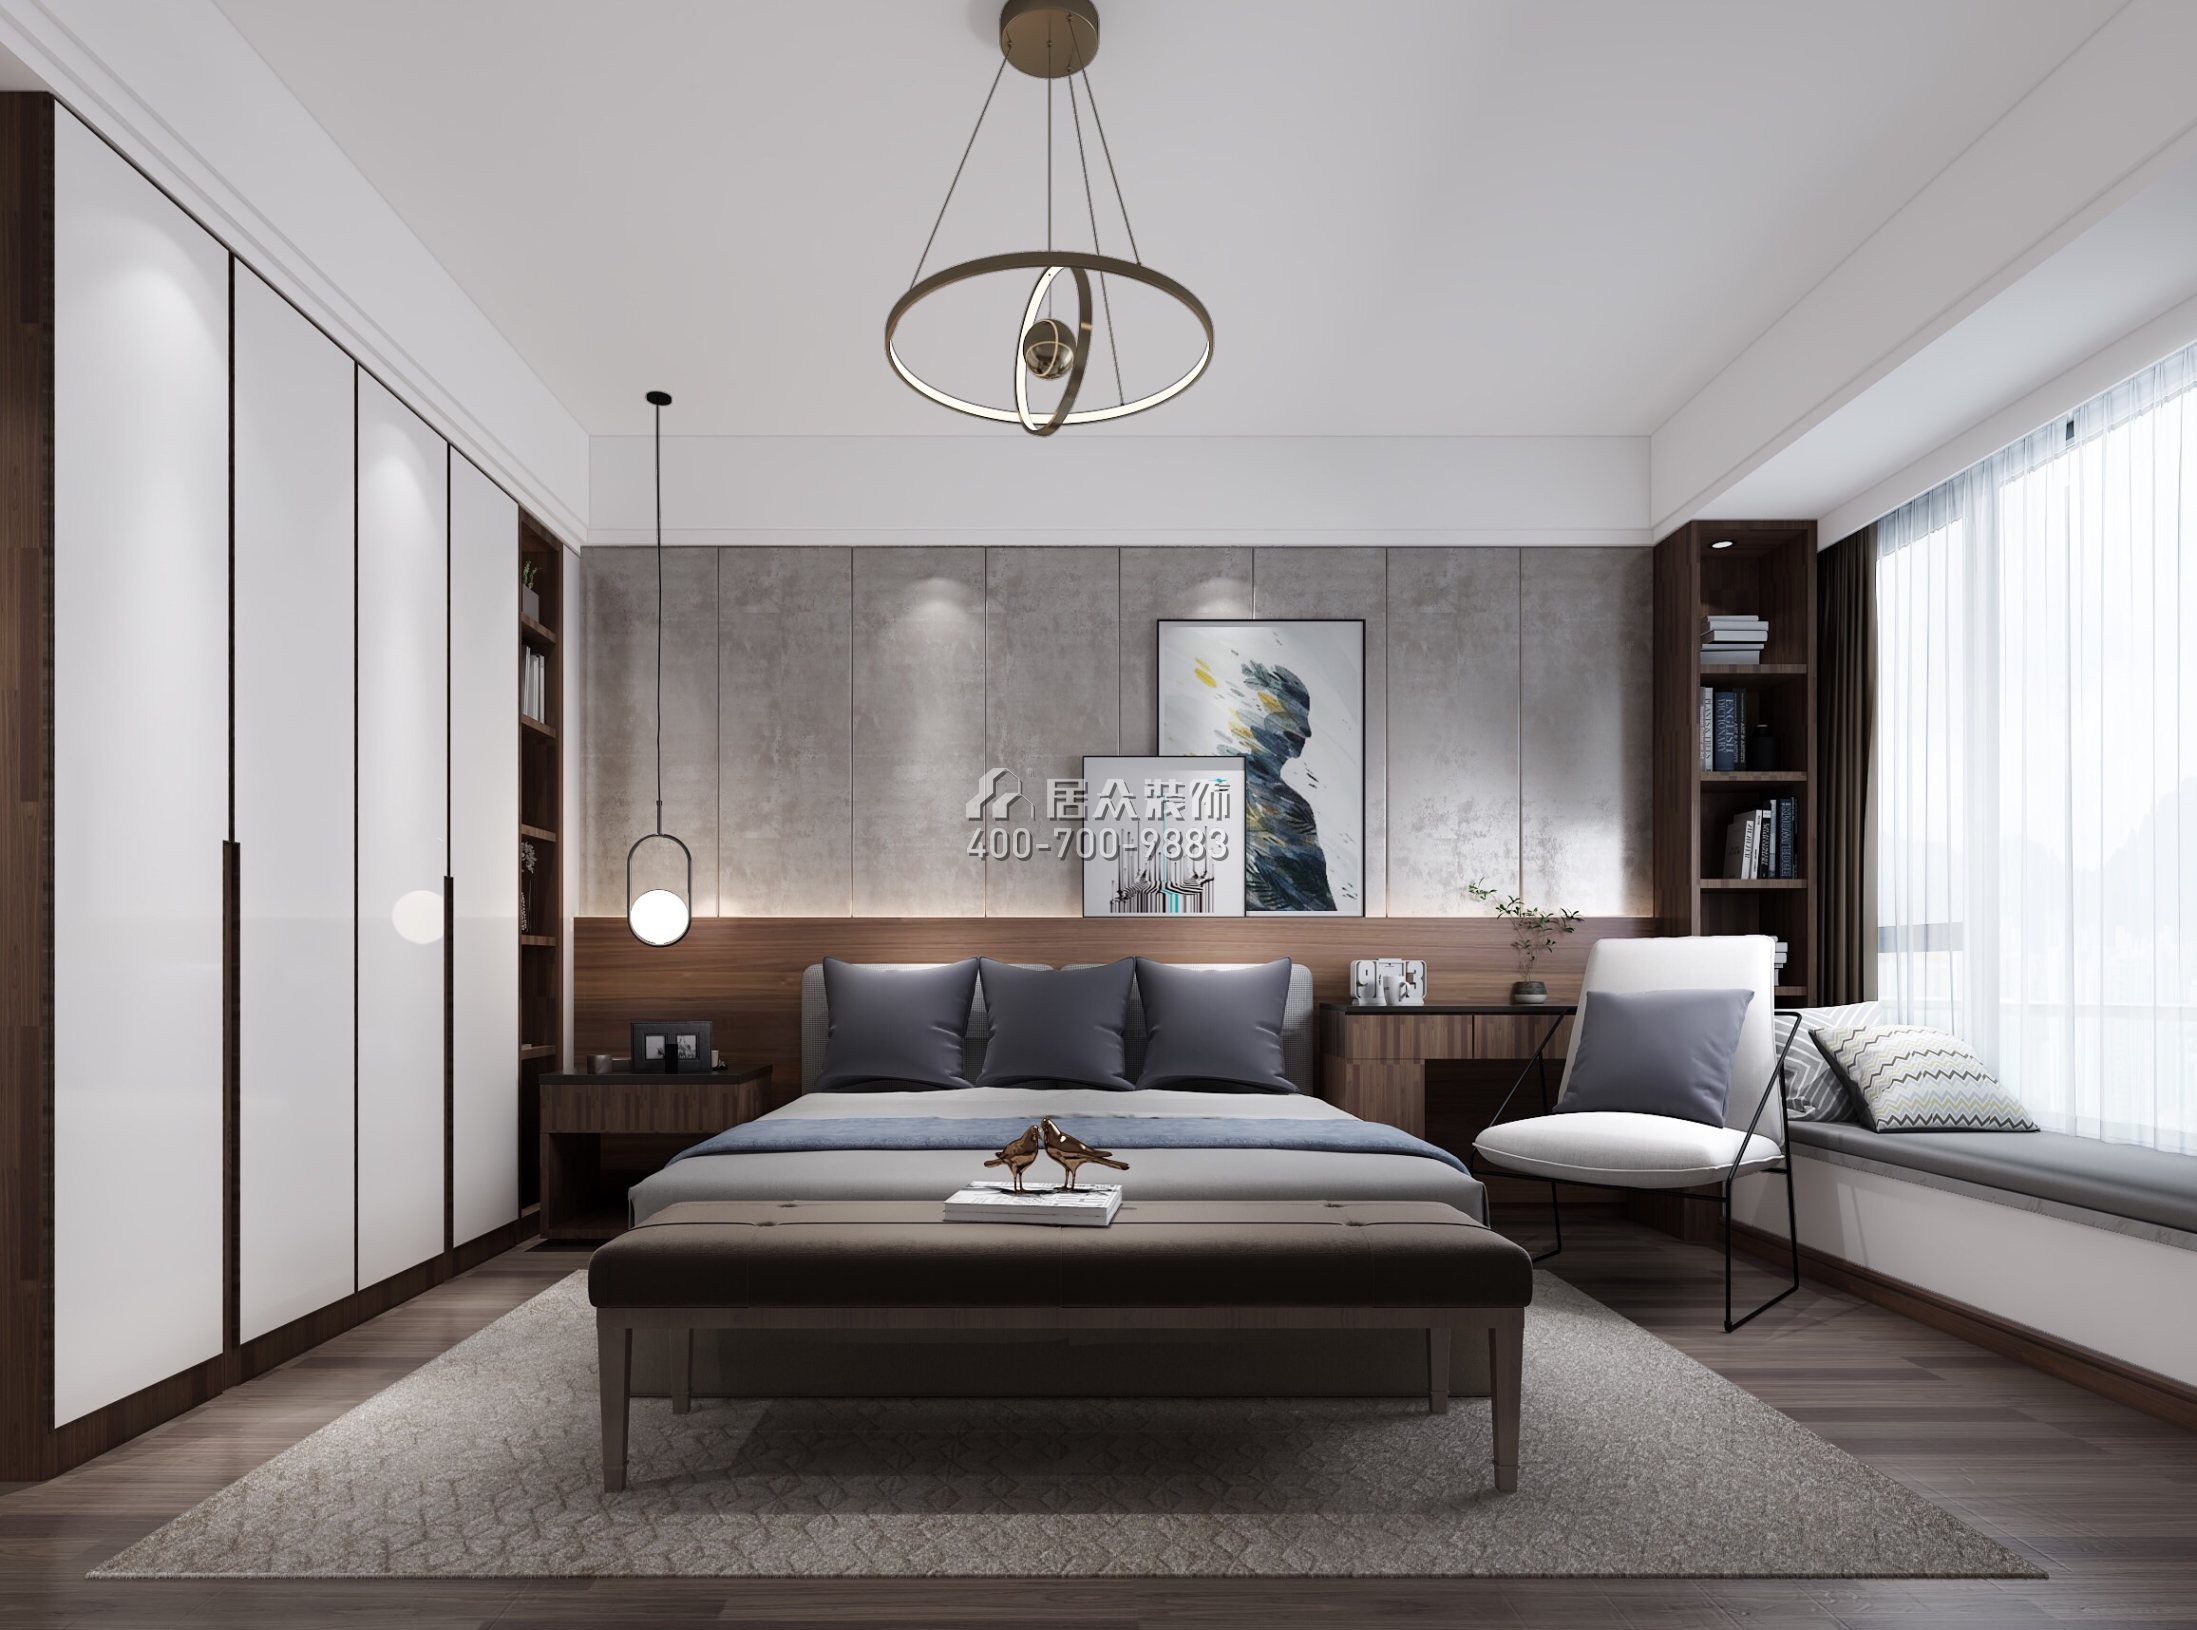 華發荔灣薈137平方米現代簡約風格平層戶型臥室裝修效果圖